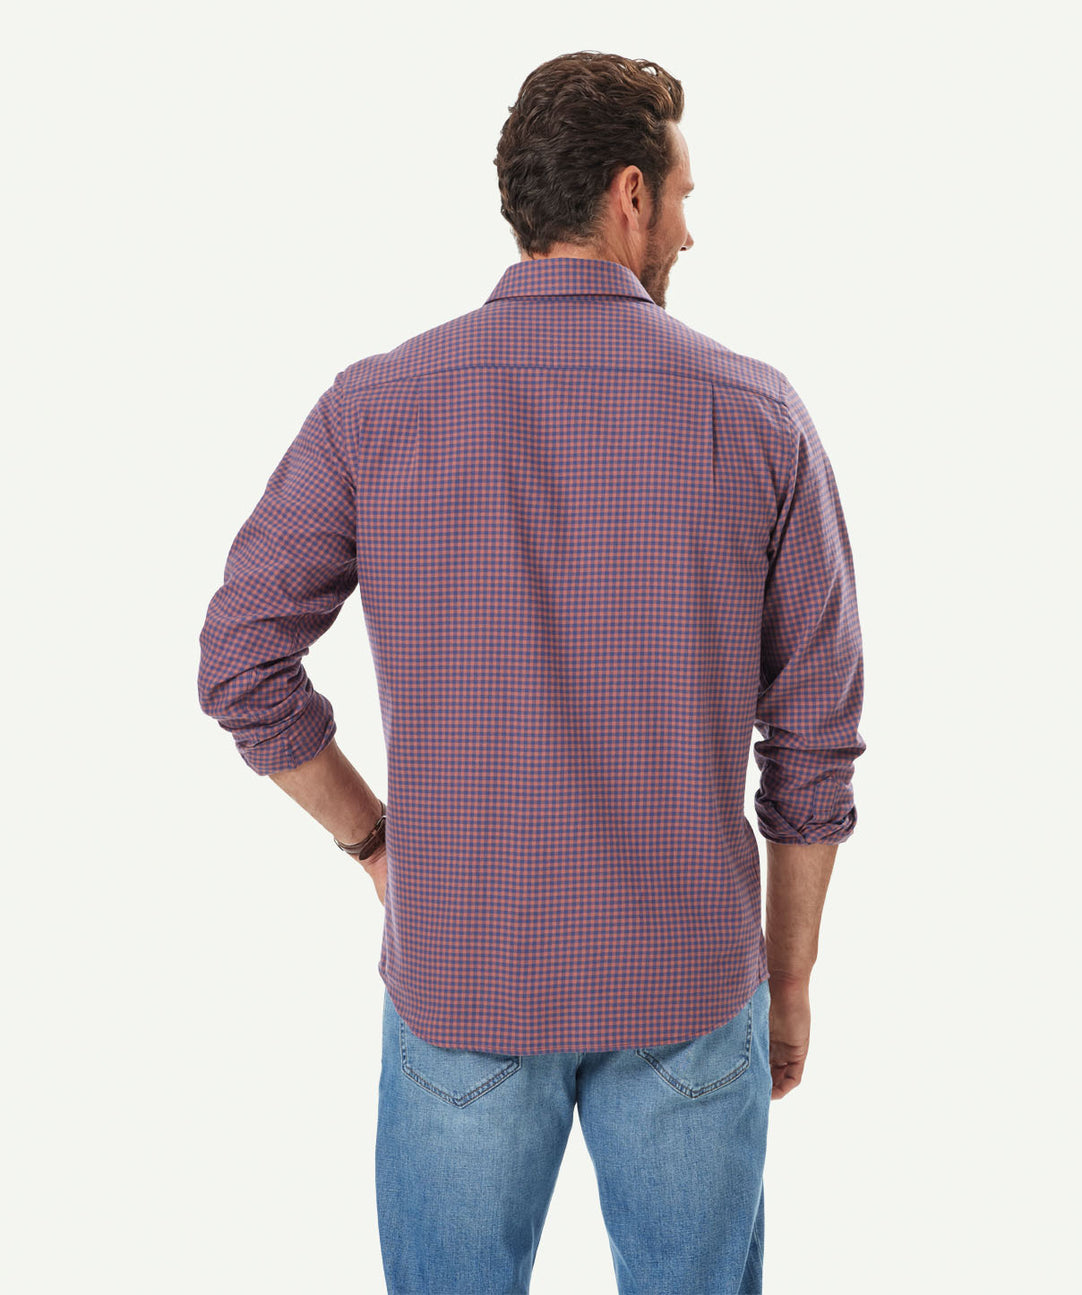 When to Tuck in a Shirt? - Men's Shirts - GAZMAN